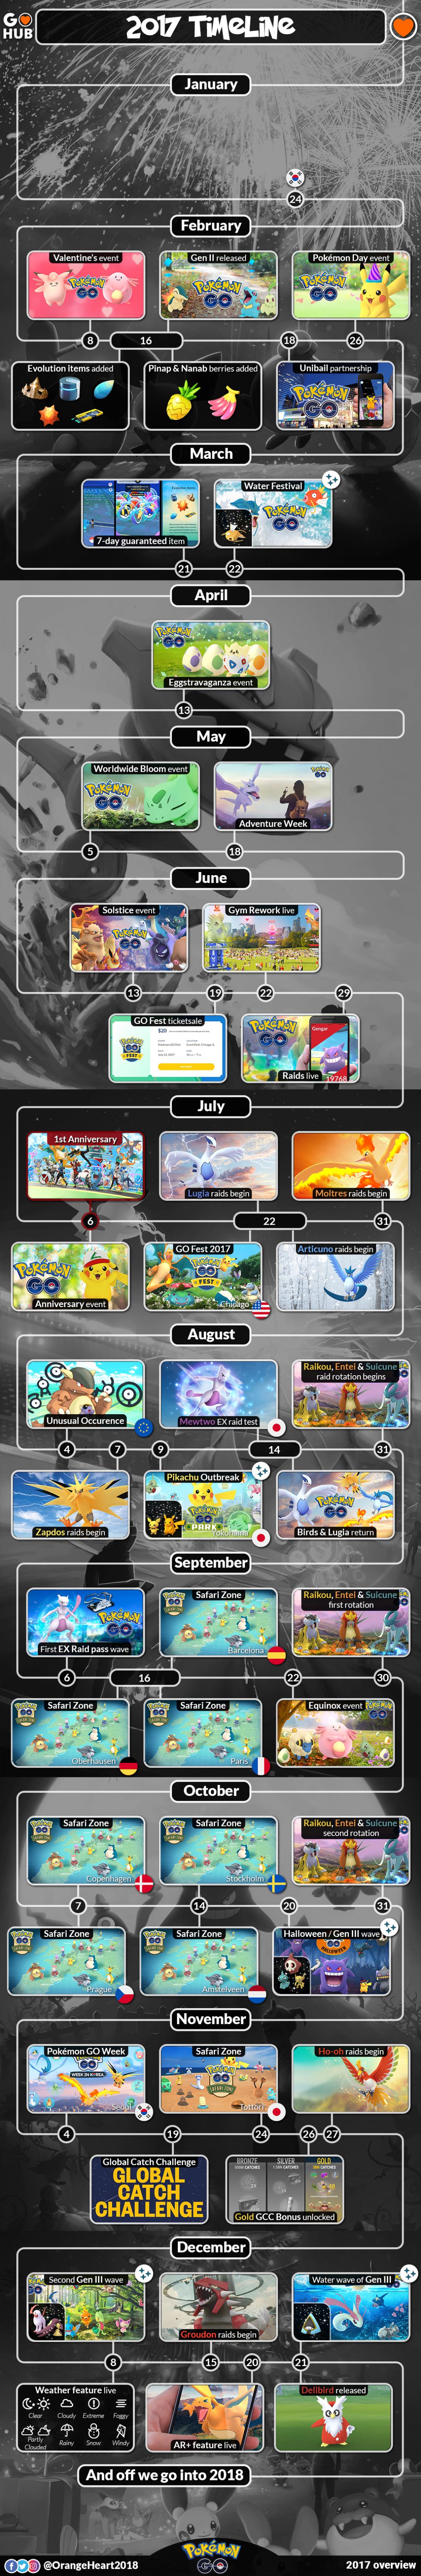 pokemon go infographic timeline